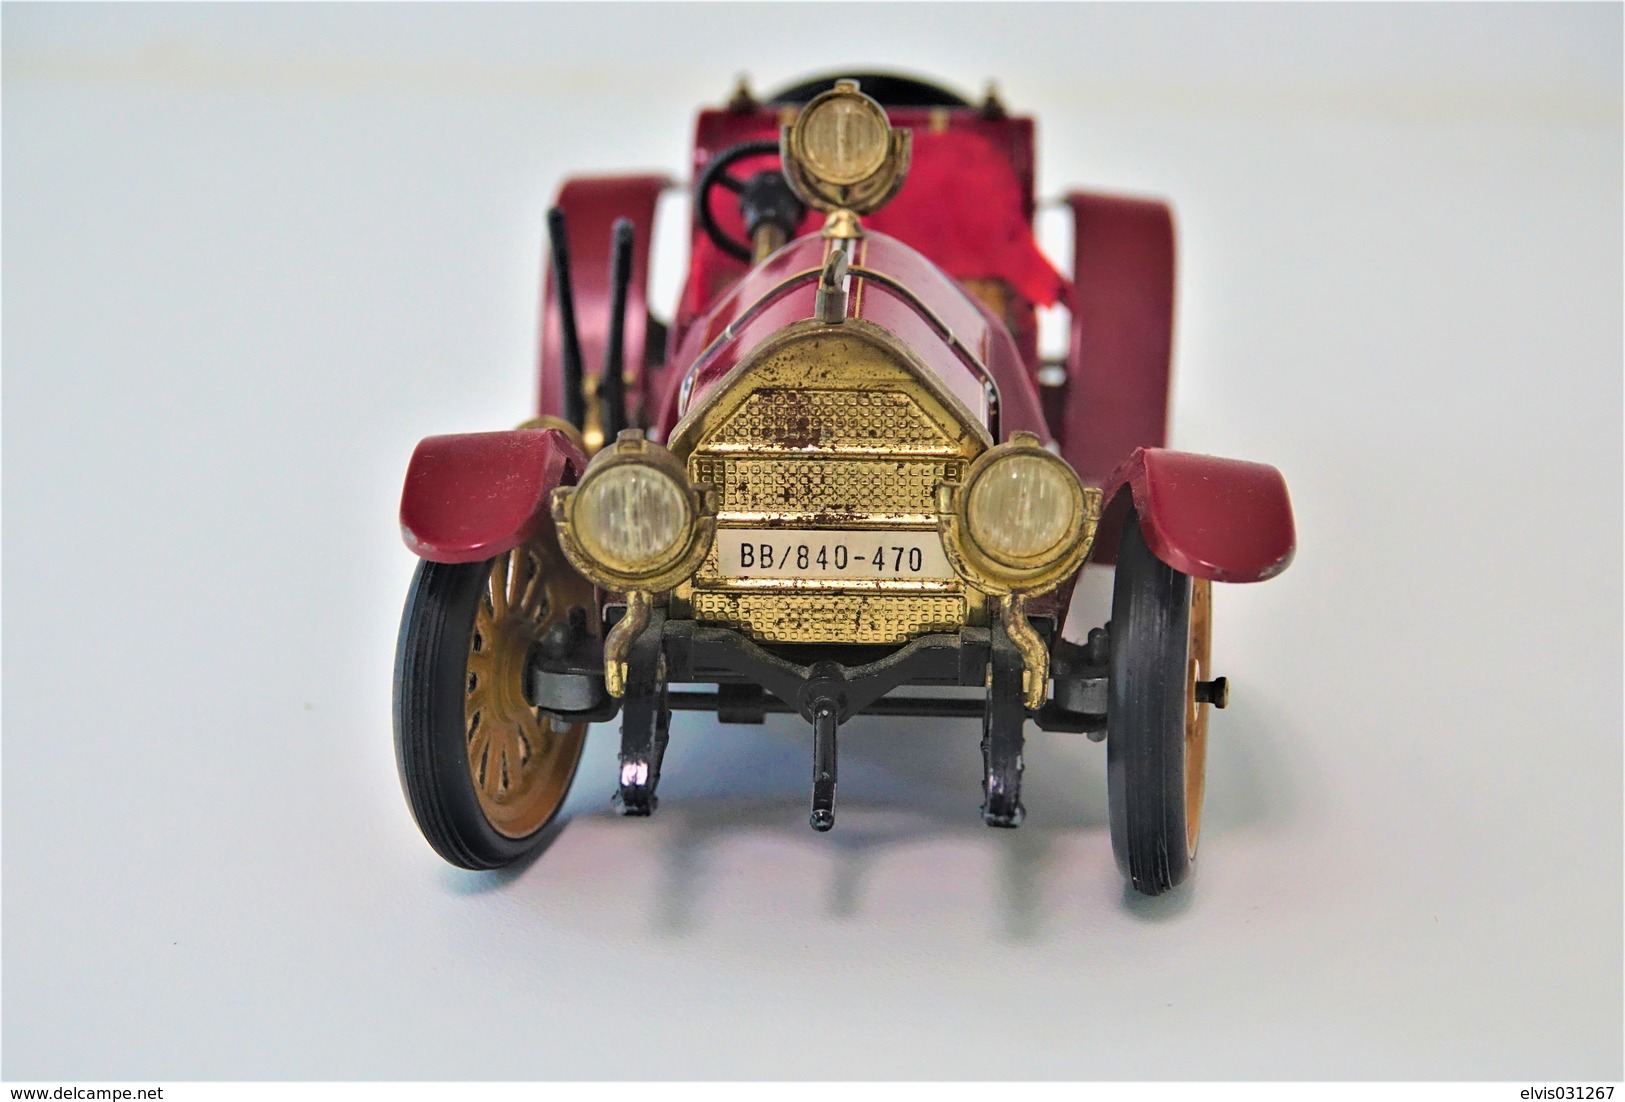 Vintage TIN TOY CAR : maker SCHUCO - red 1036/1 - Mercer Typ 35j 1913 - 18cm - west germany  - Friction